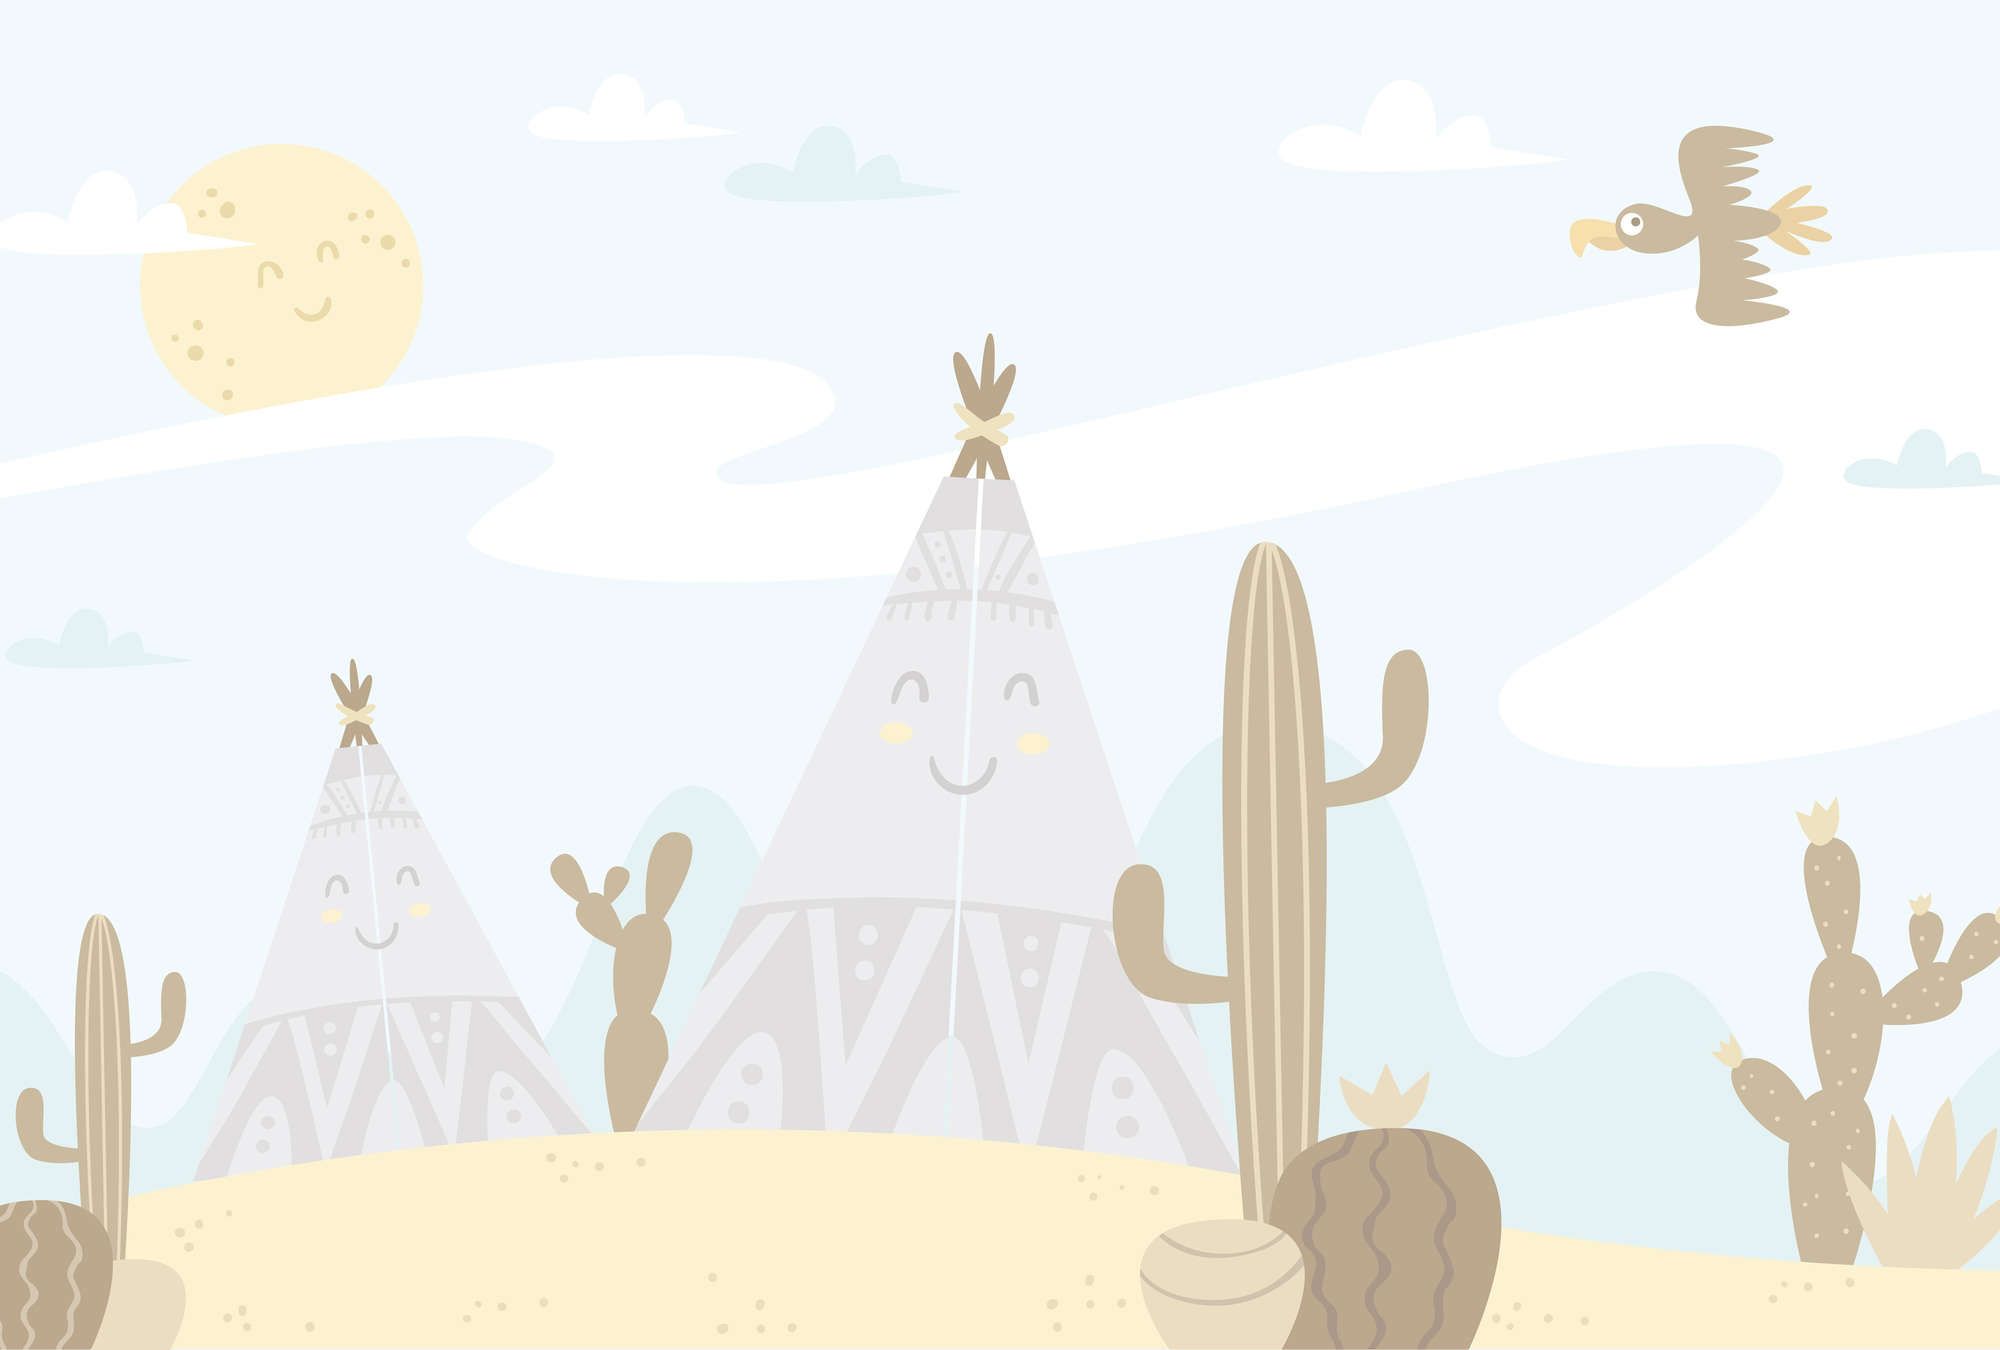             papiers peints à impression numérique Paysage désertique avec tipis - intissé structuré
        